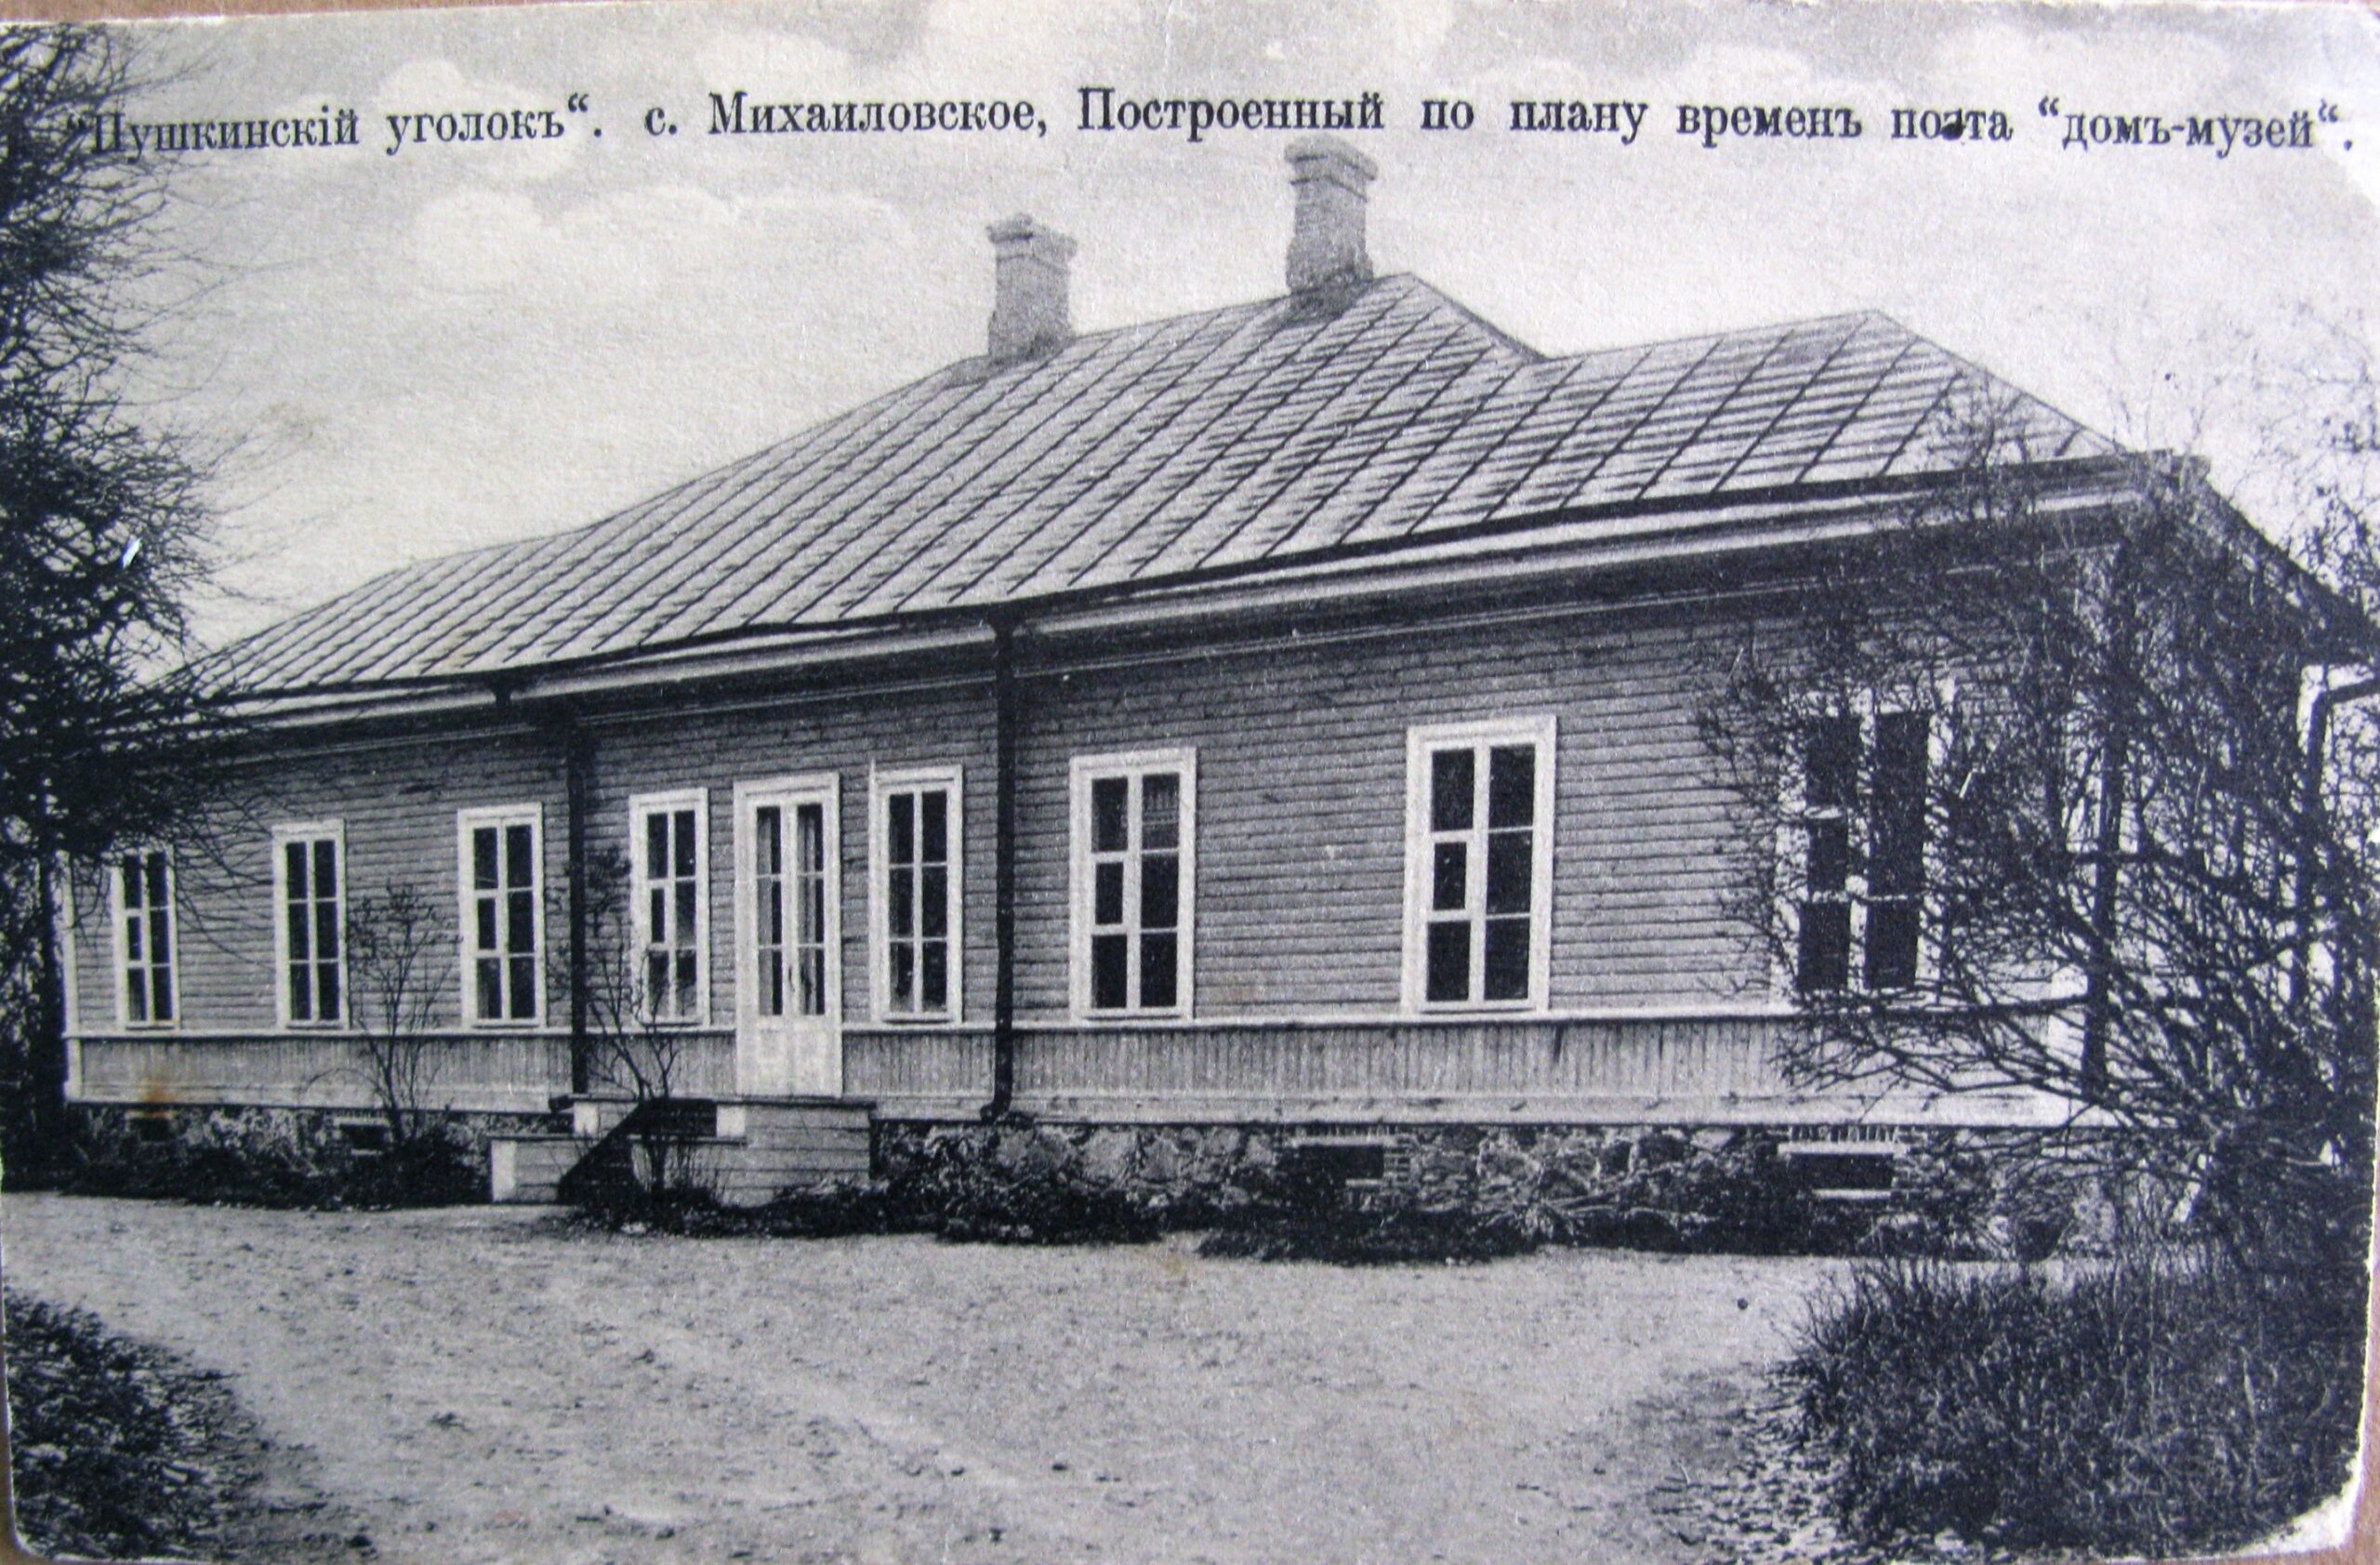 110 лет исполнилось Пушкинскому литературному музею в Михайловском